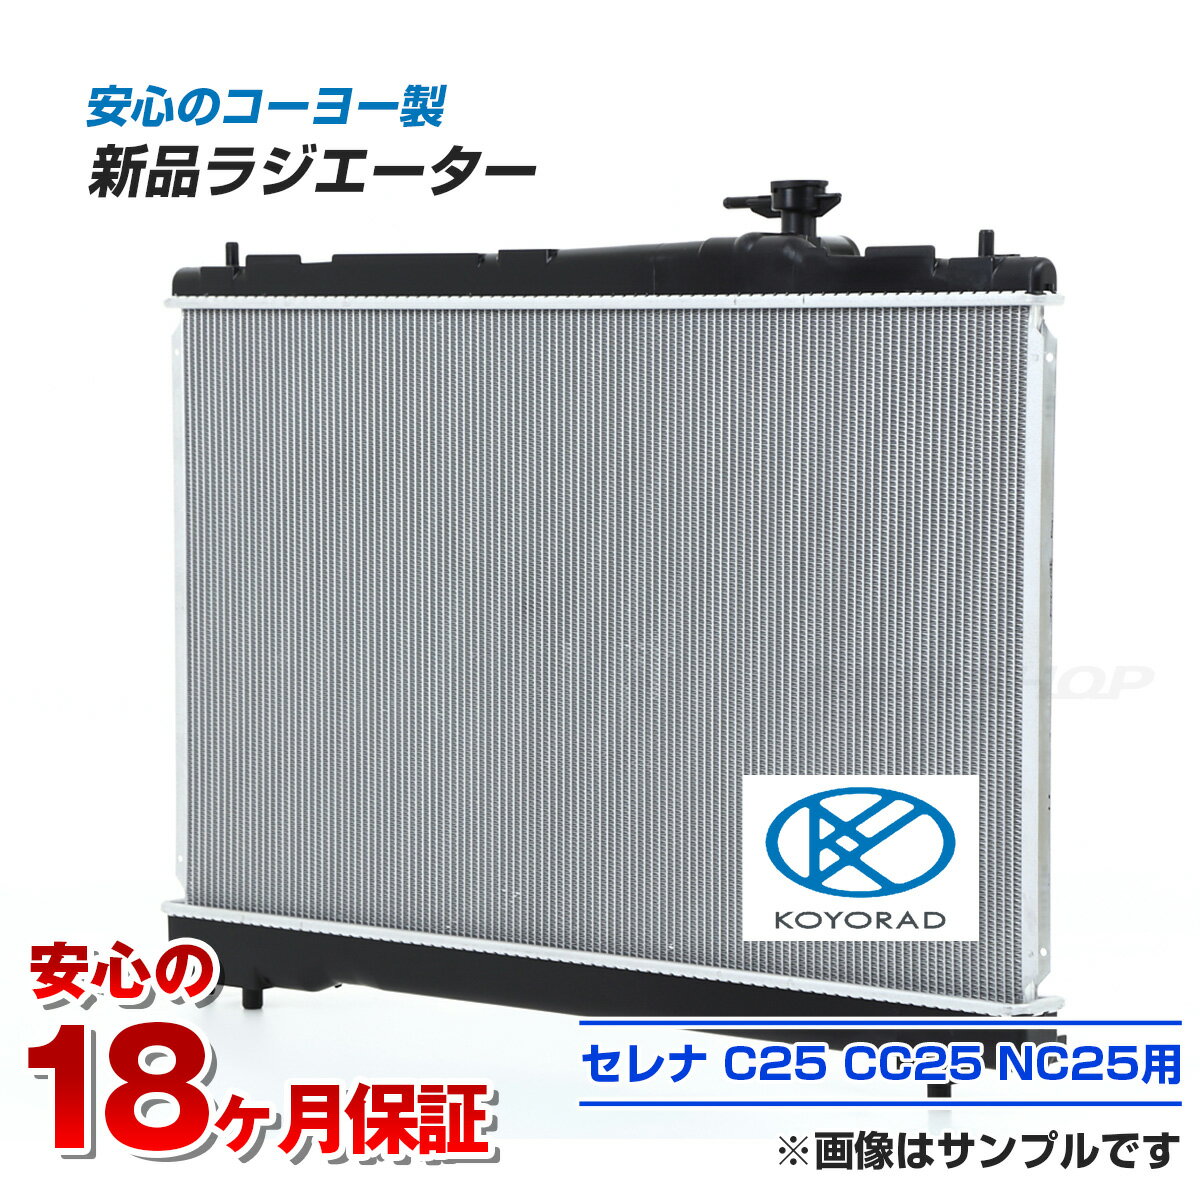 【18ヶ月保証】セレナ C25 CC25 CNC25 ラジエーター ラジエター KOYO製 カー用品 ...